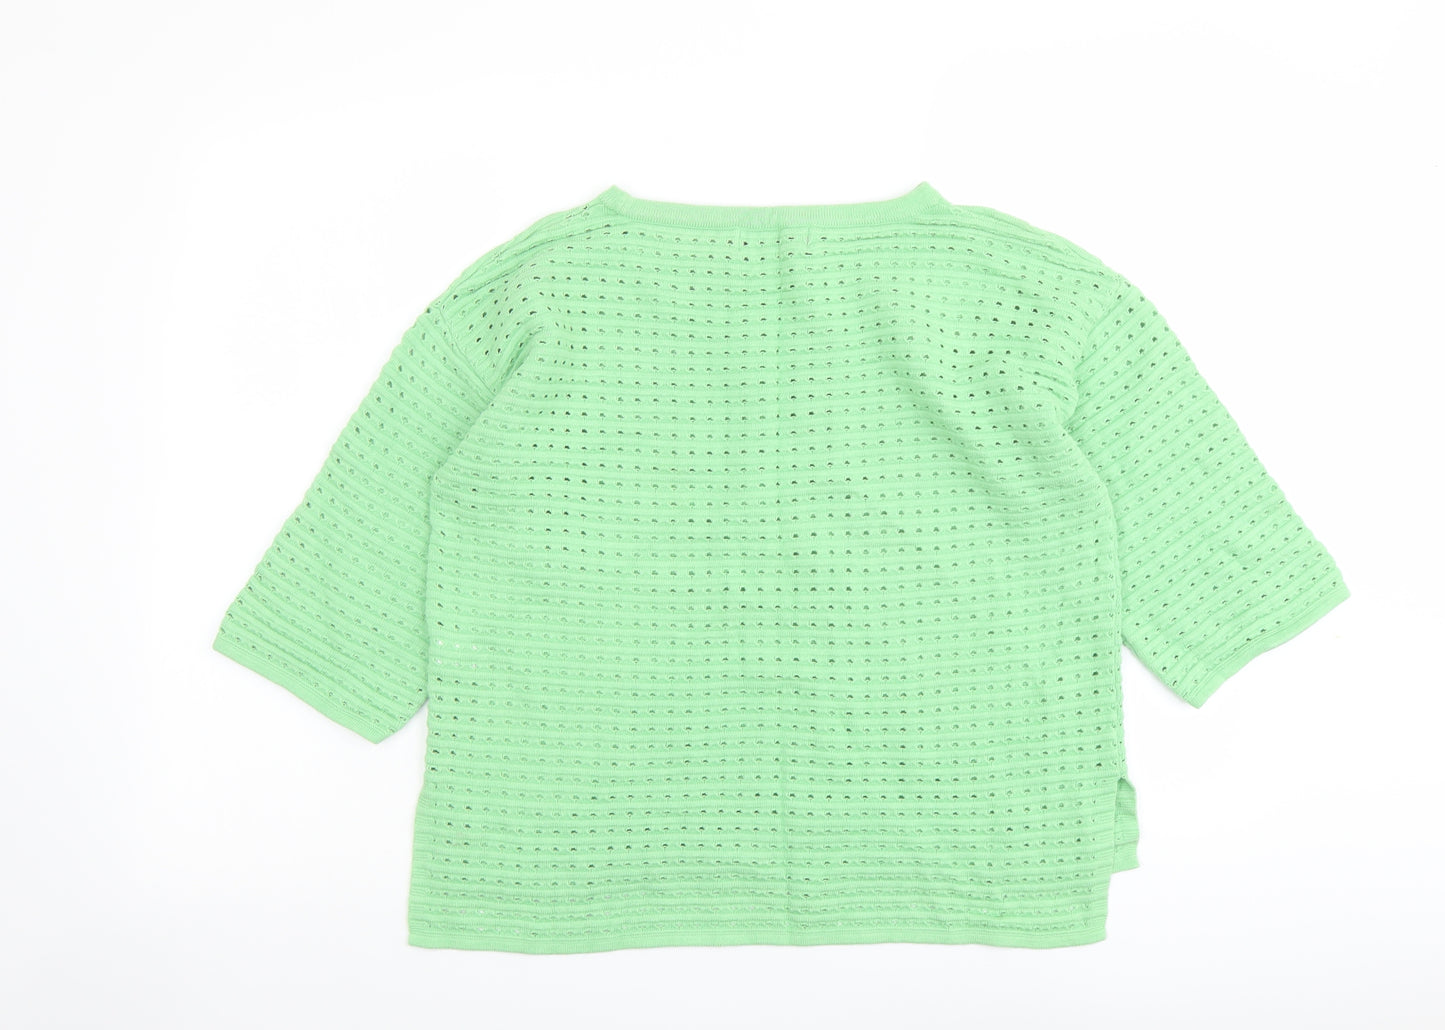 NEXT Womens Green Round Neck Cotton Pullover Jumper Size 10